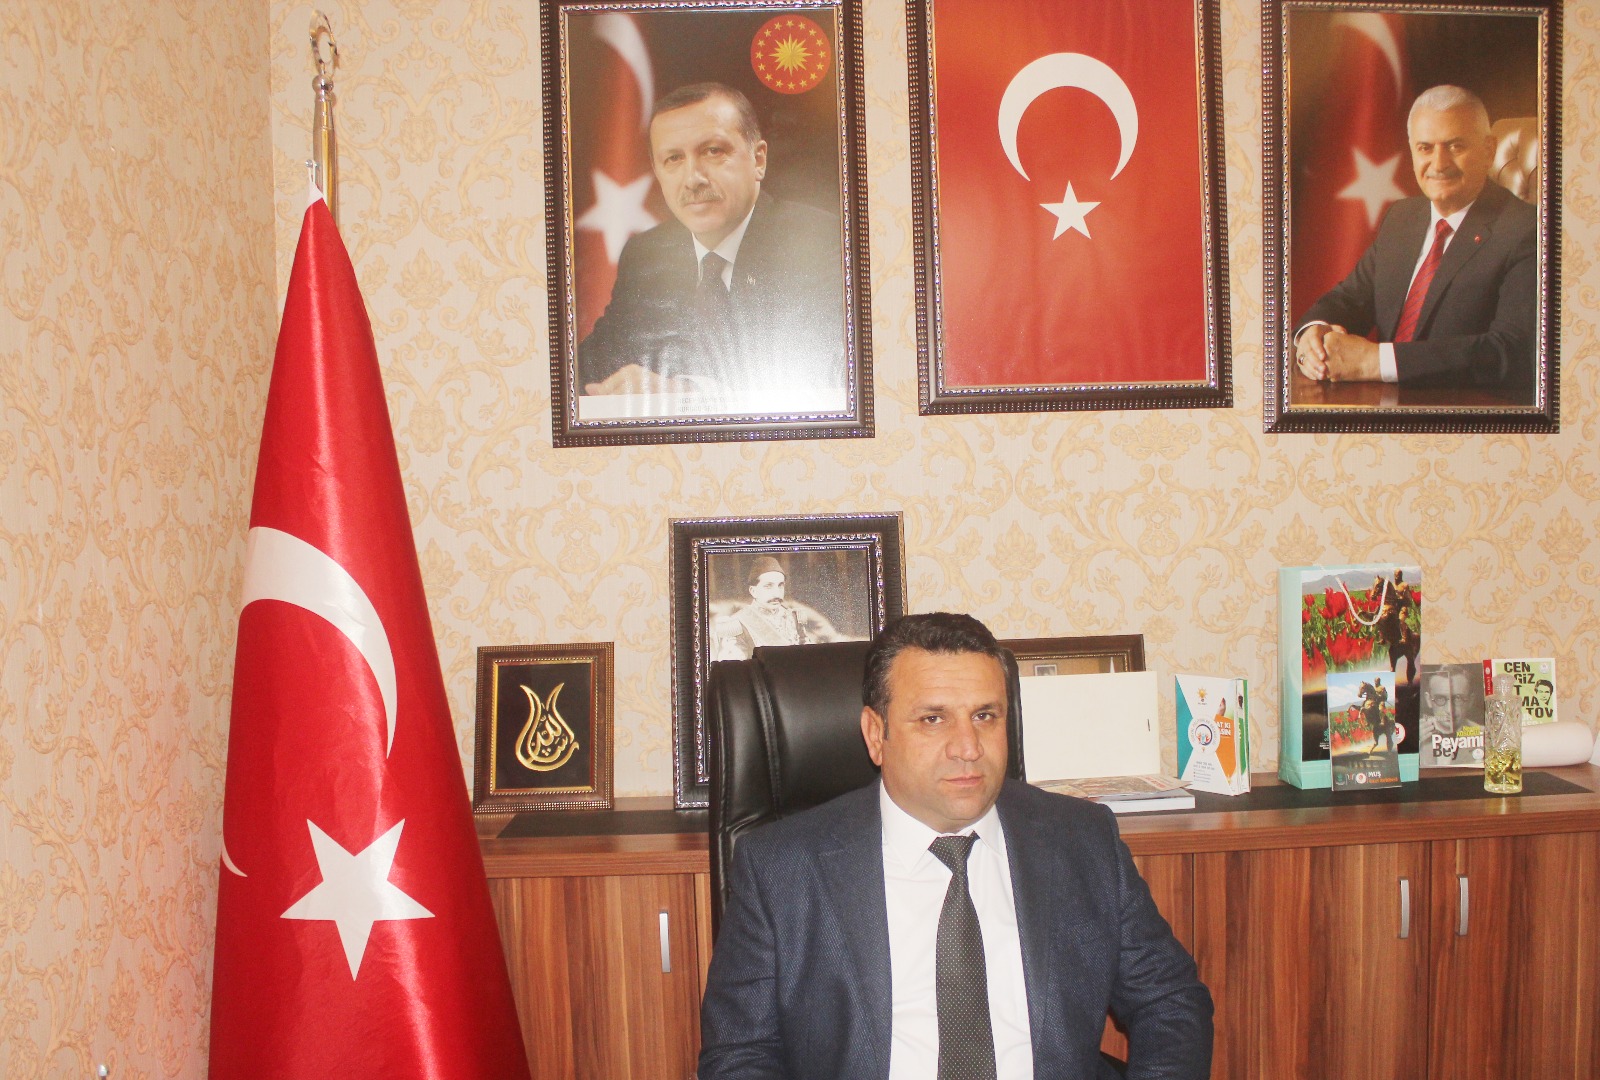 İlçe Başkanı Mehmet Kurt’tan bir müjde daha…  Artık Sınavlar Vezirköprü’de de yapılacak..